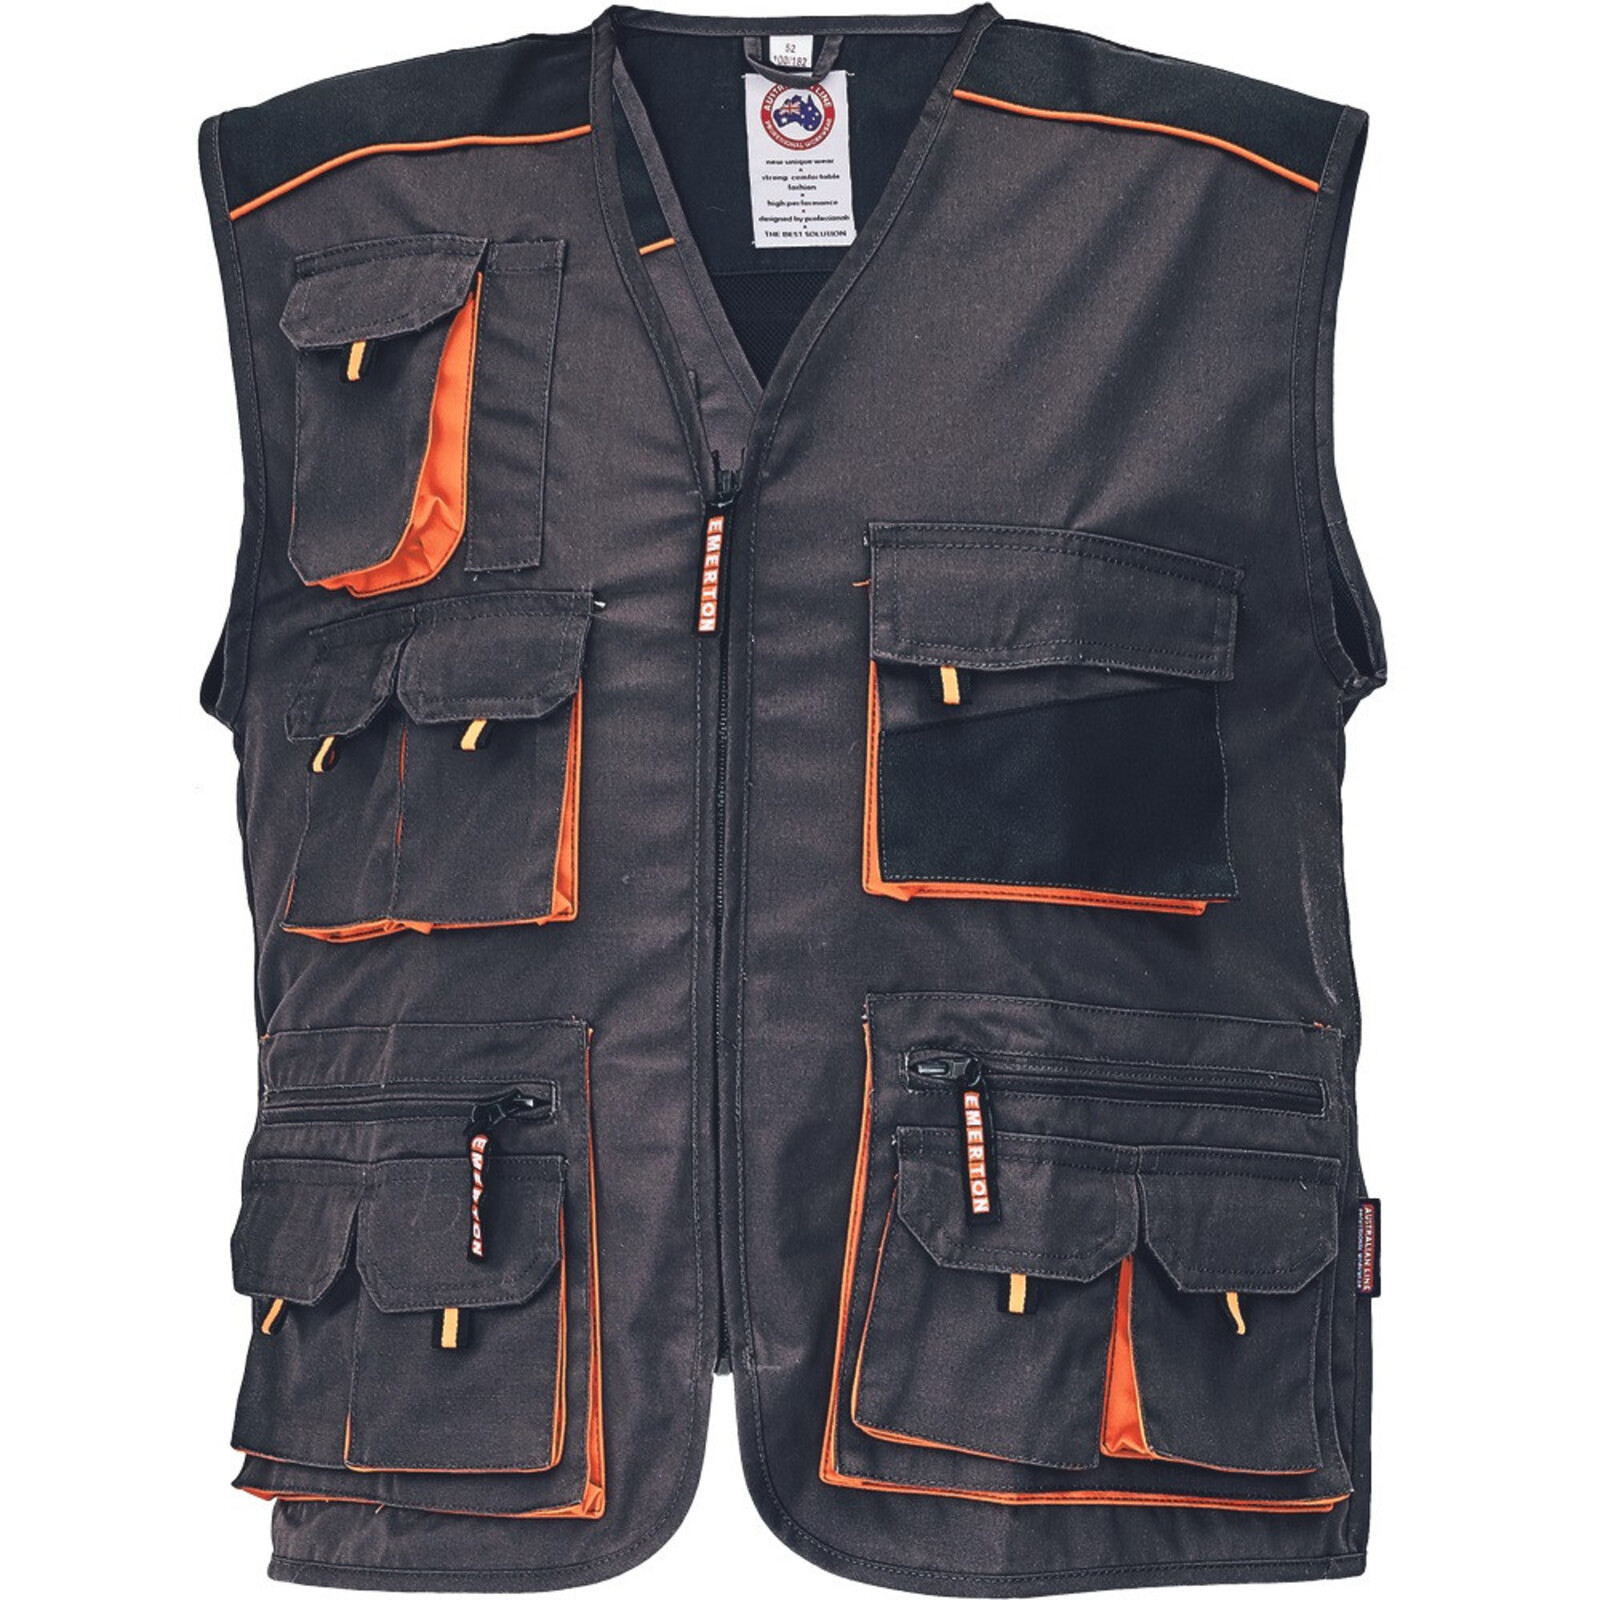 Odolná montérková vesta Emerton pánska - veľkosť: 48, farba: čierna/oranžová